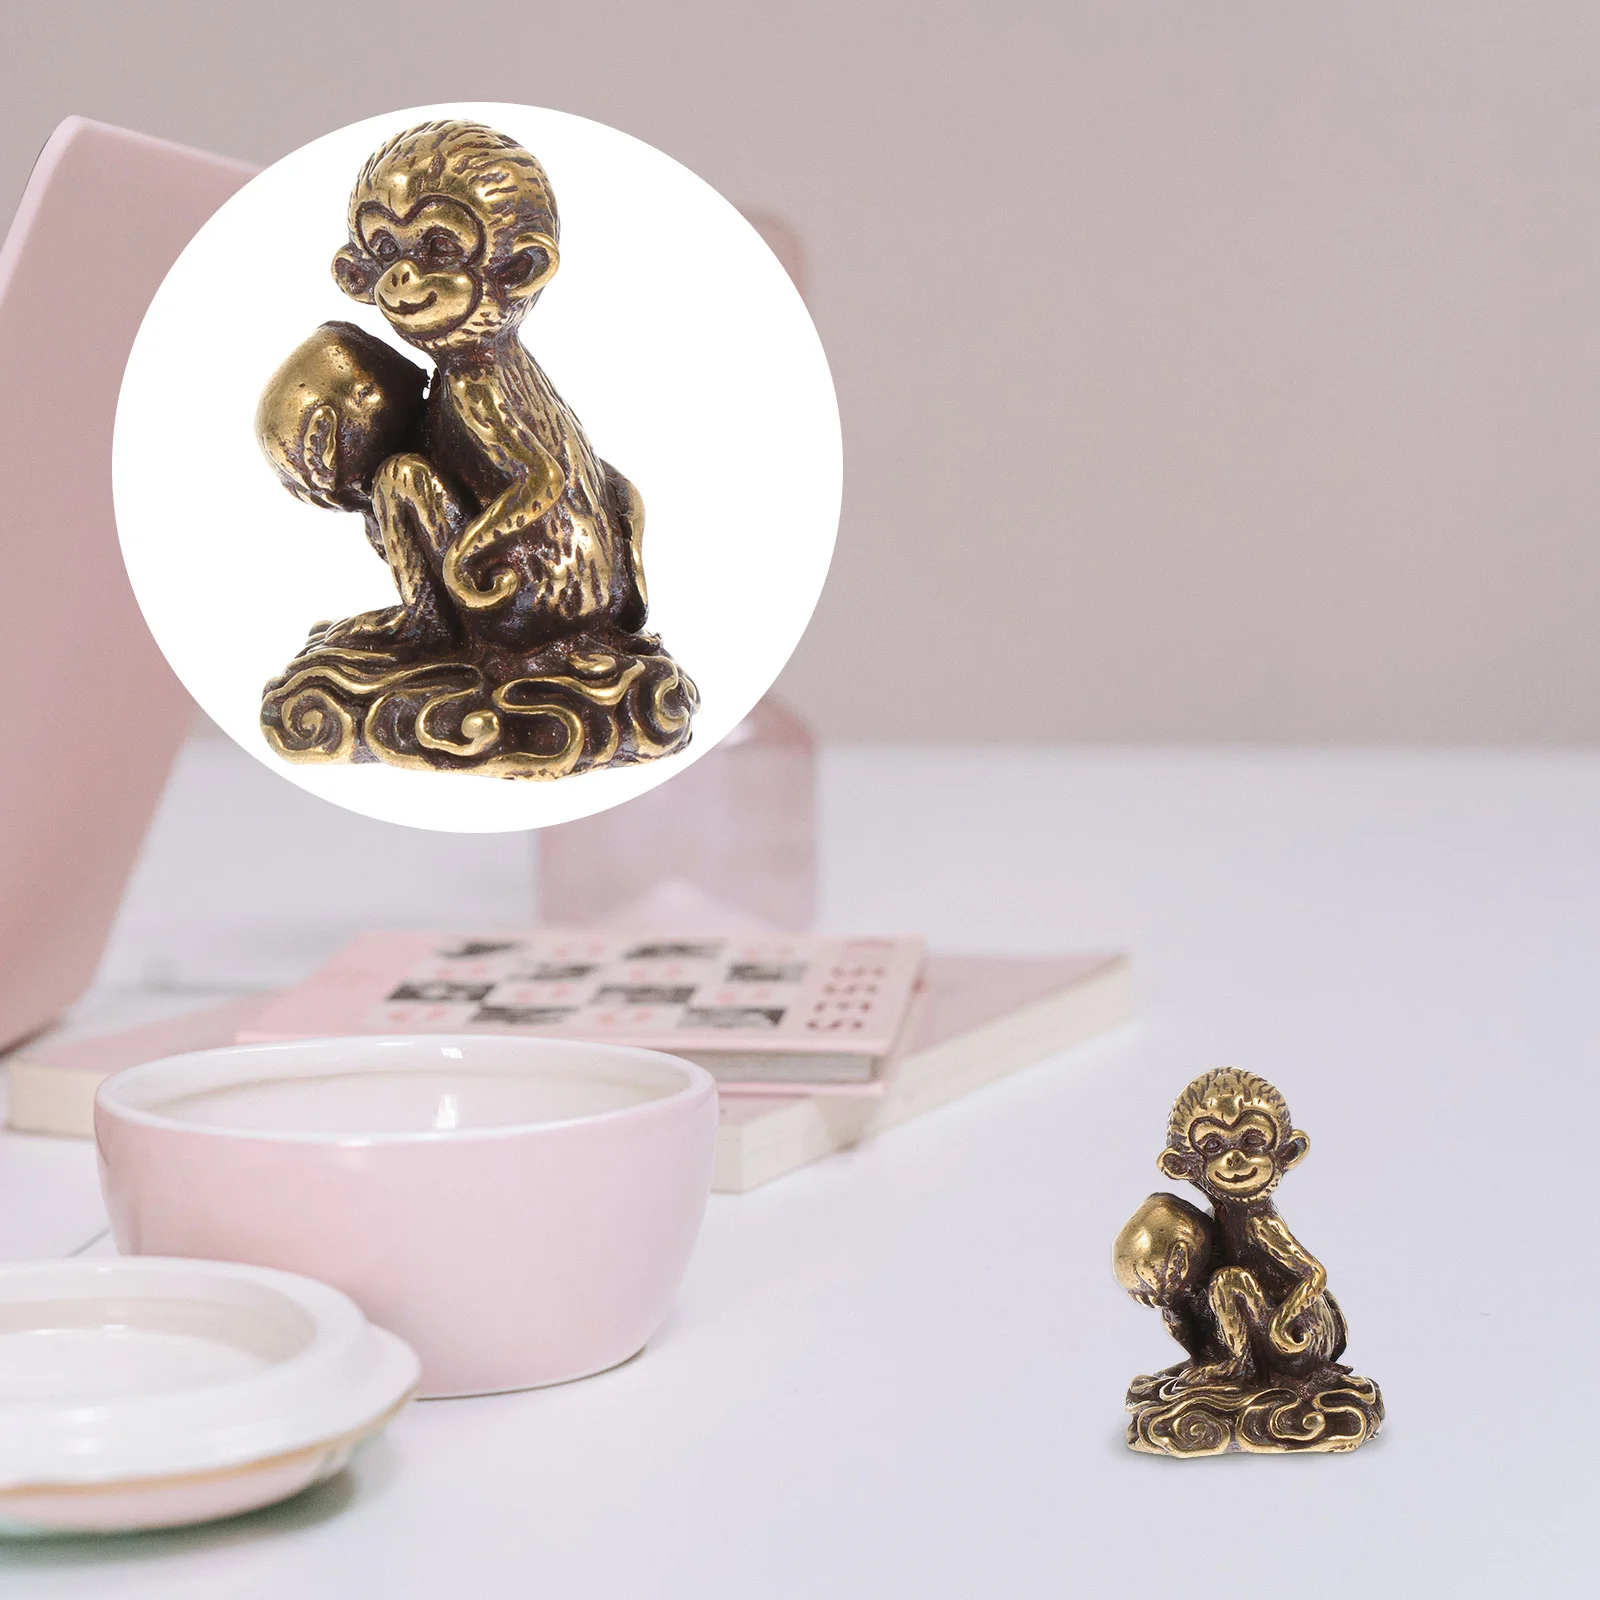 

Pendant Desktop Mini Decor Home Monkey Adornment Exquisite Copper Shaped Small Statue Craft Ornament